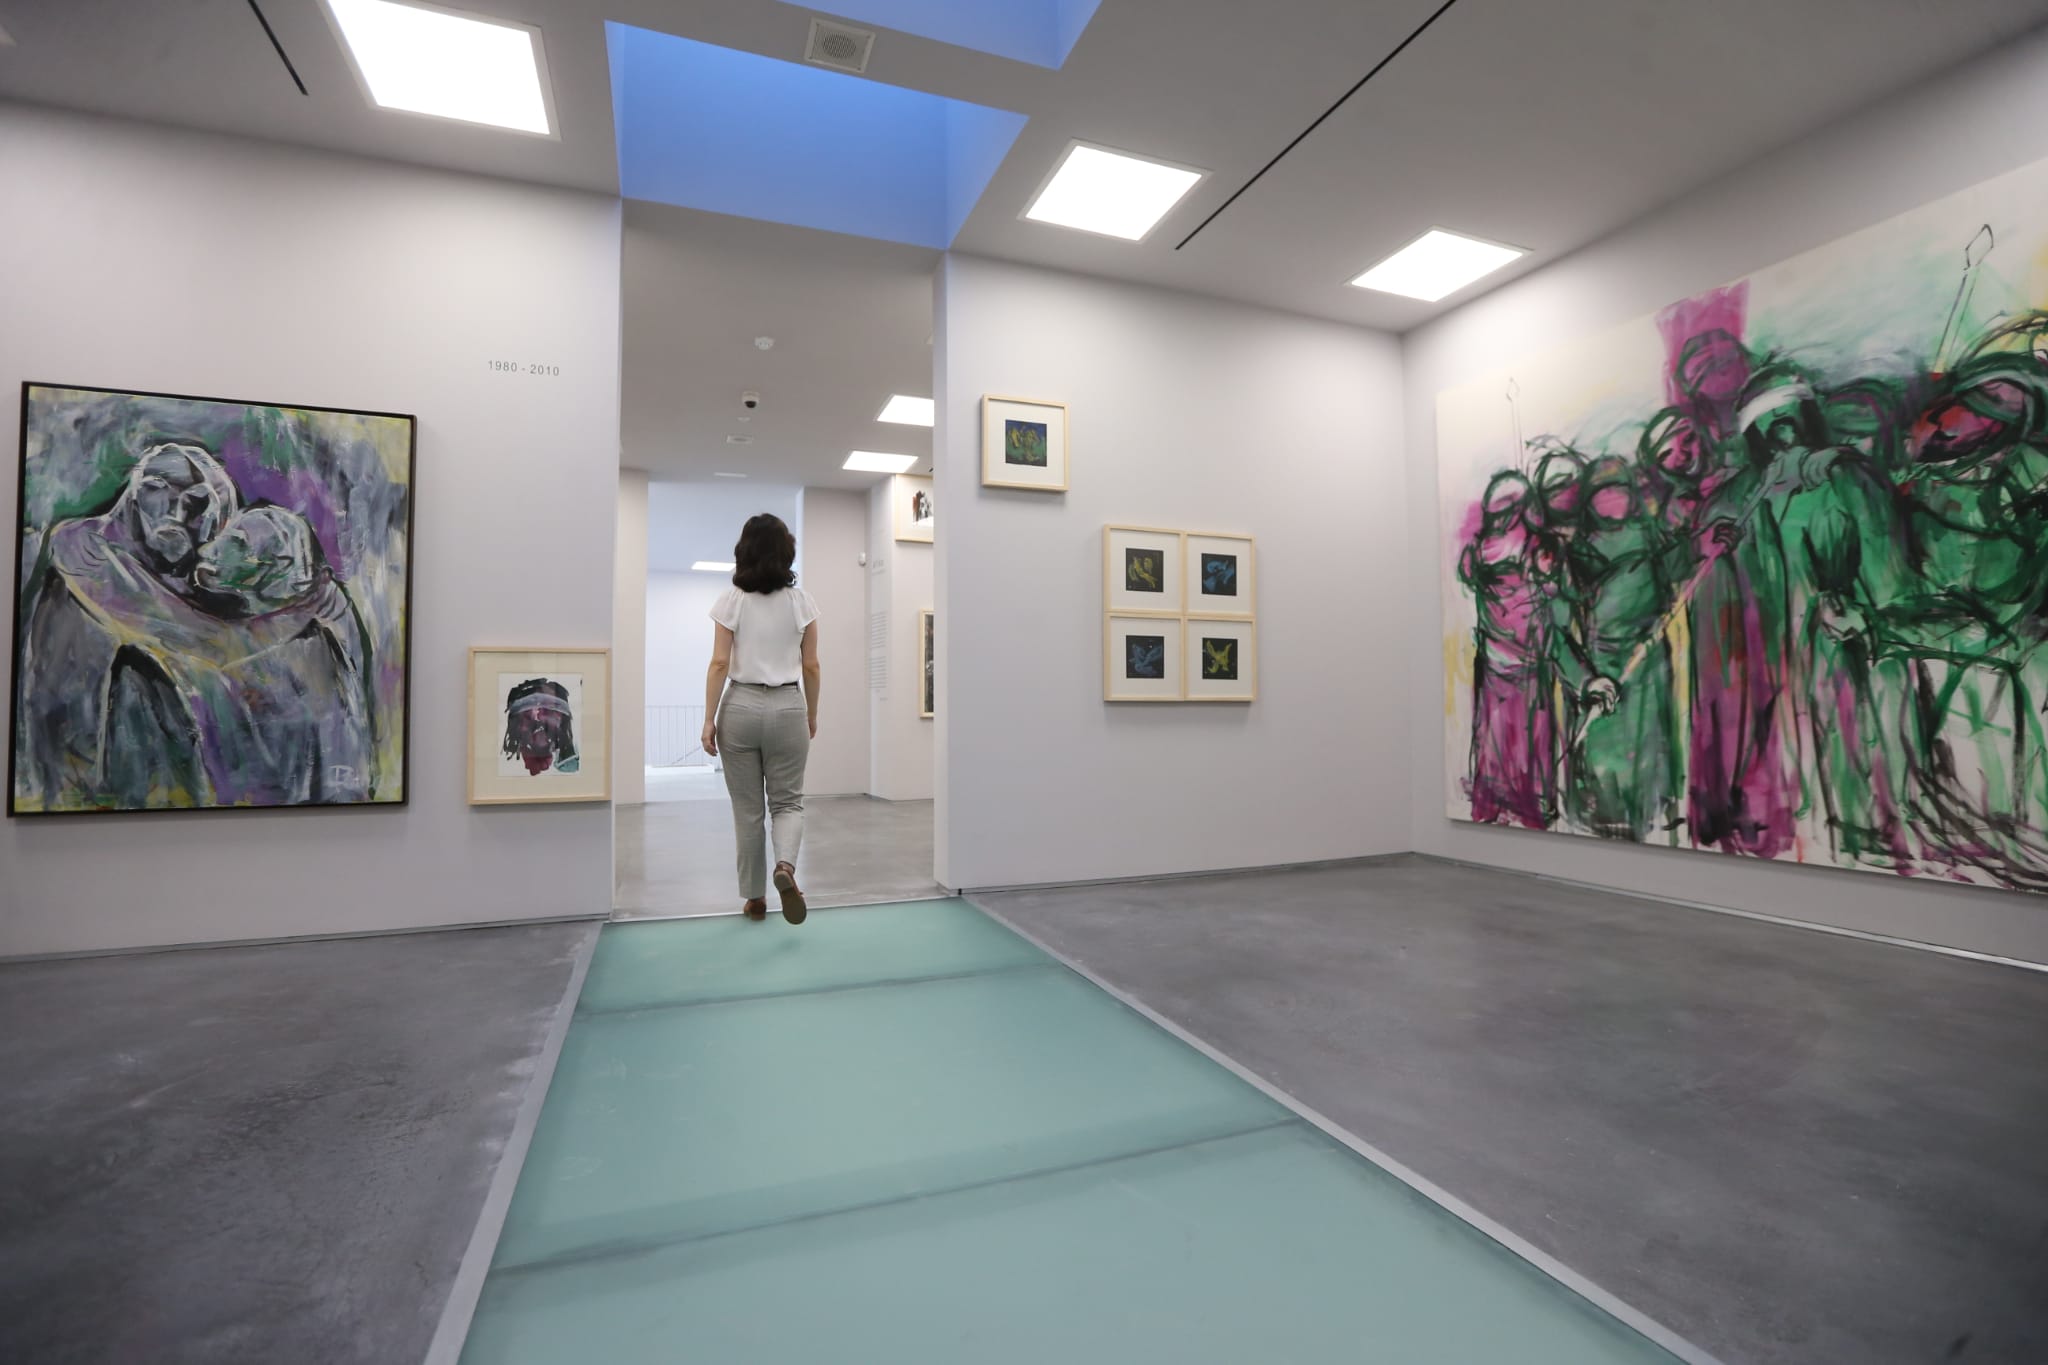 El equipamiento cultural estrena su ampliación de 400 metros cuadrados con un amplio montaje sobre la trayectoria del artista malagueño